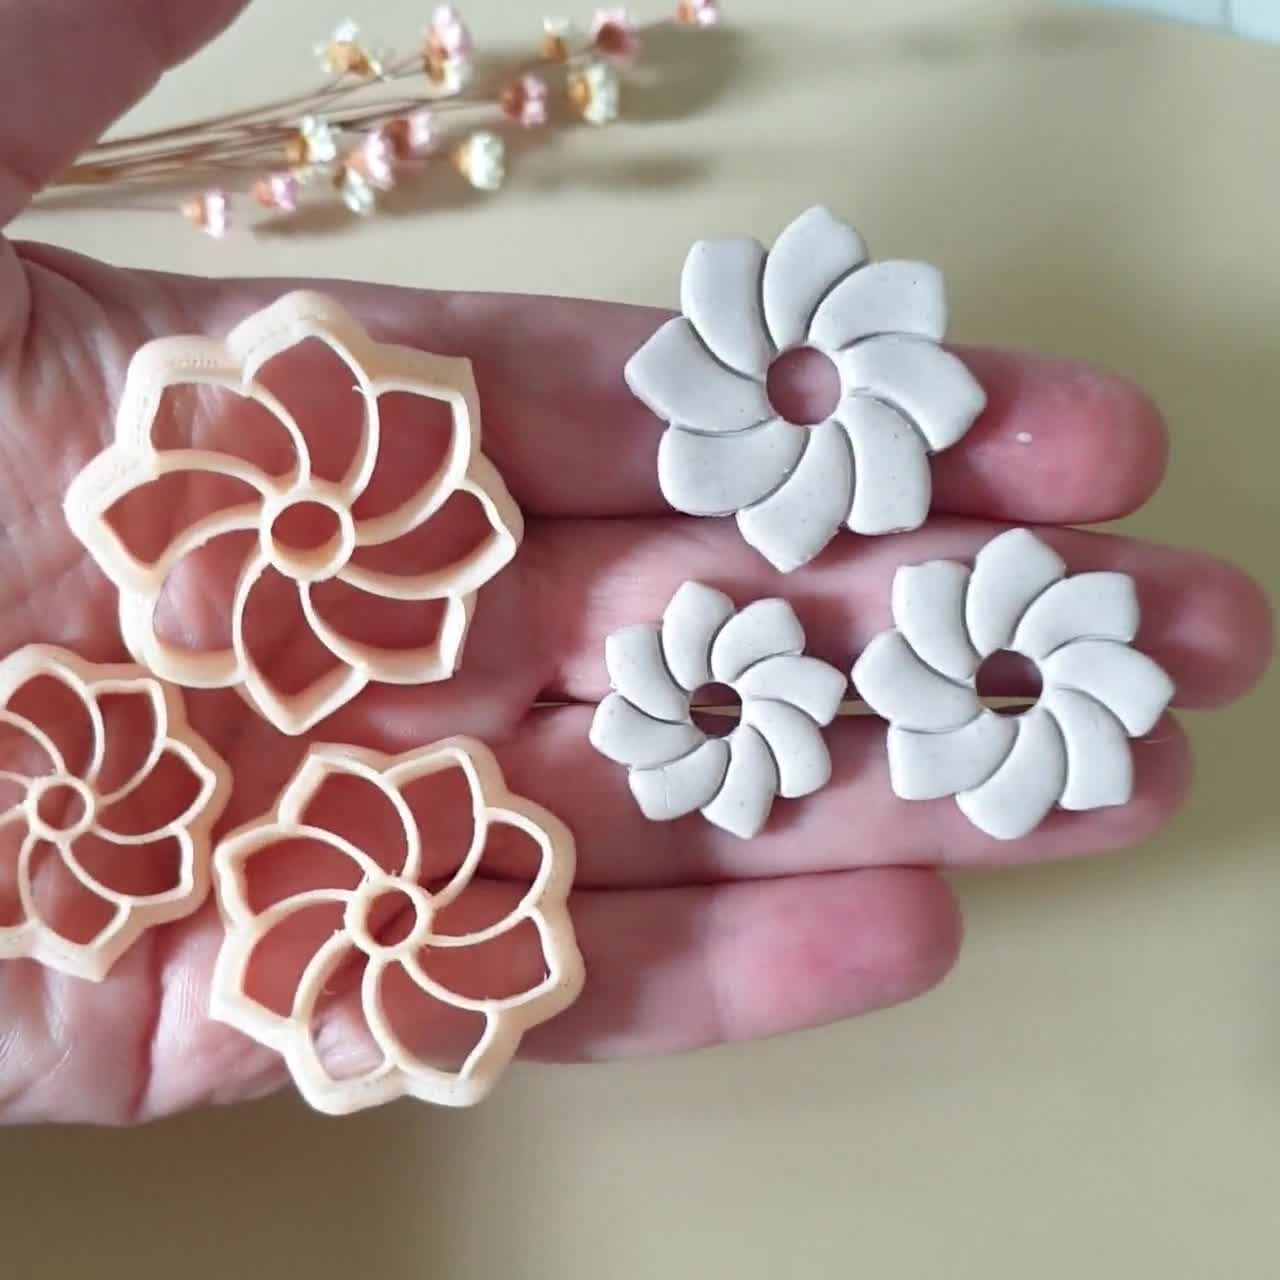 Argilla polimerica per principianti: crea gioielli floreali